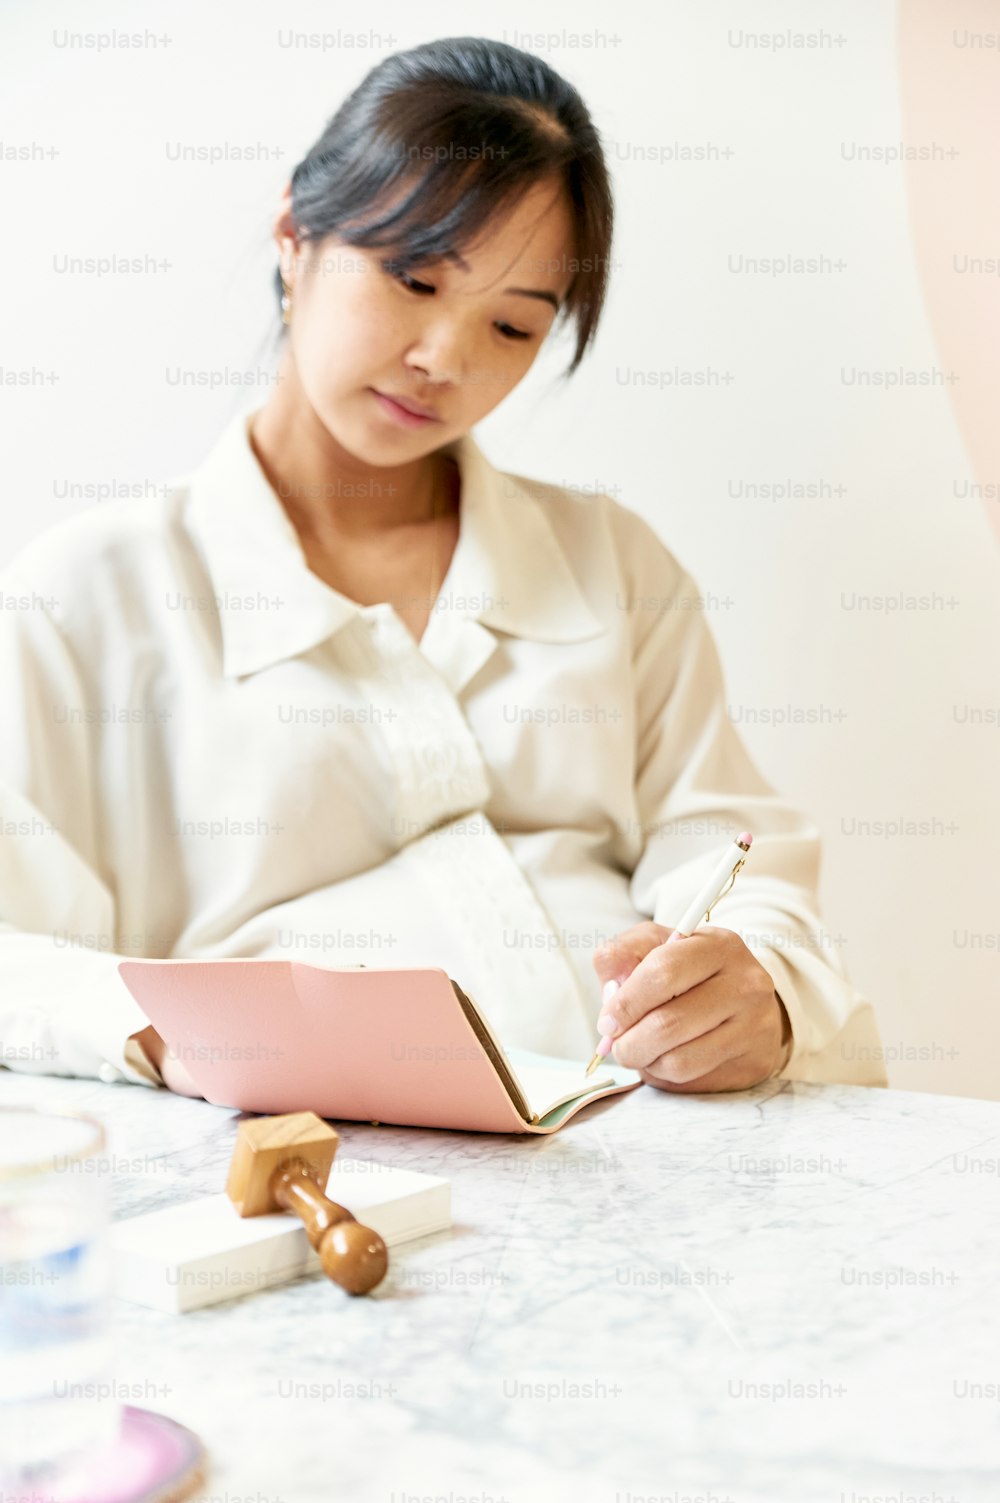 Une femme assise à une table écrivant dans un cahier